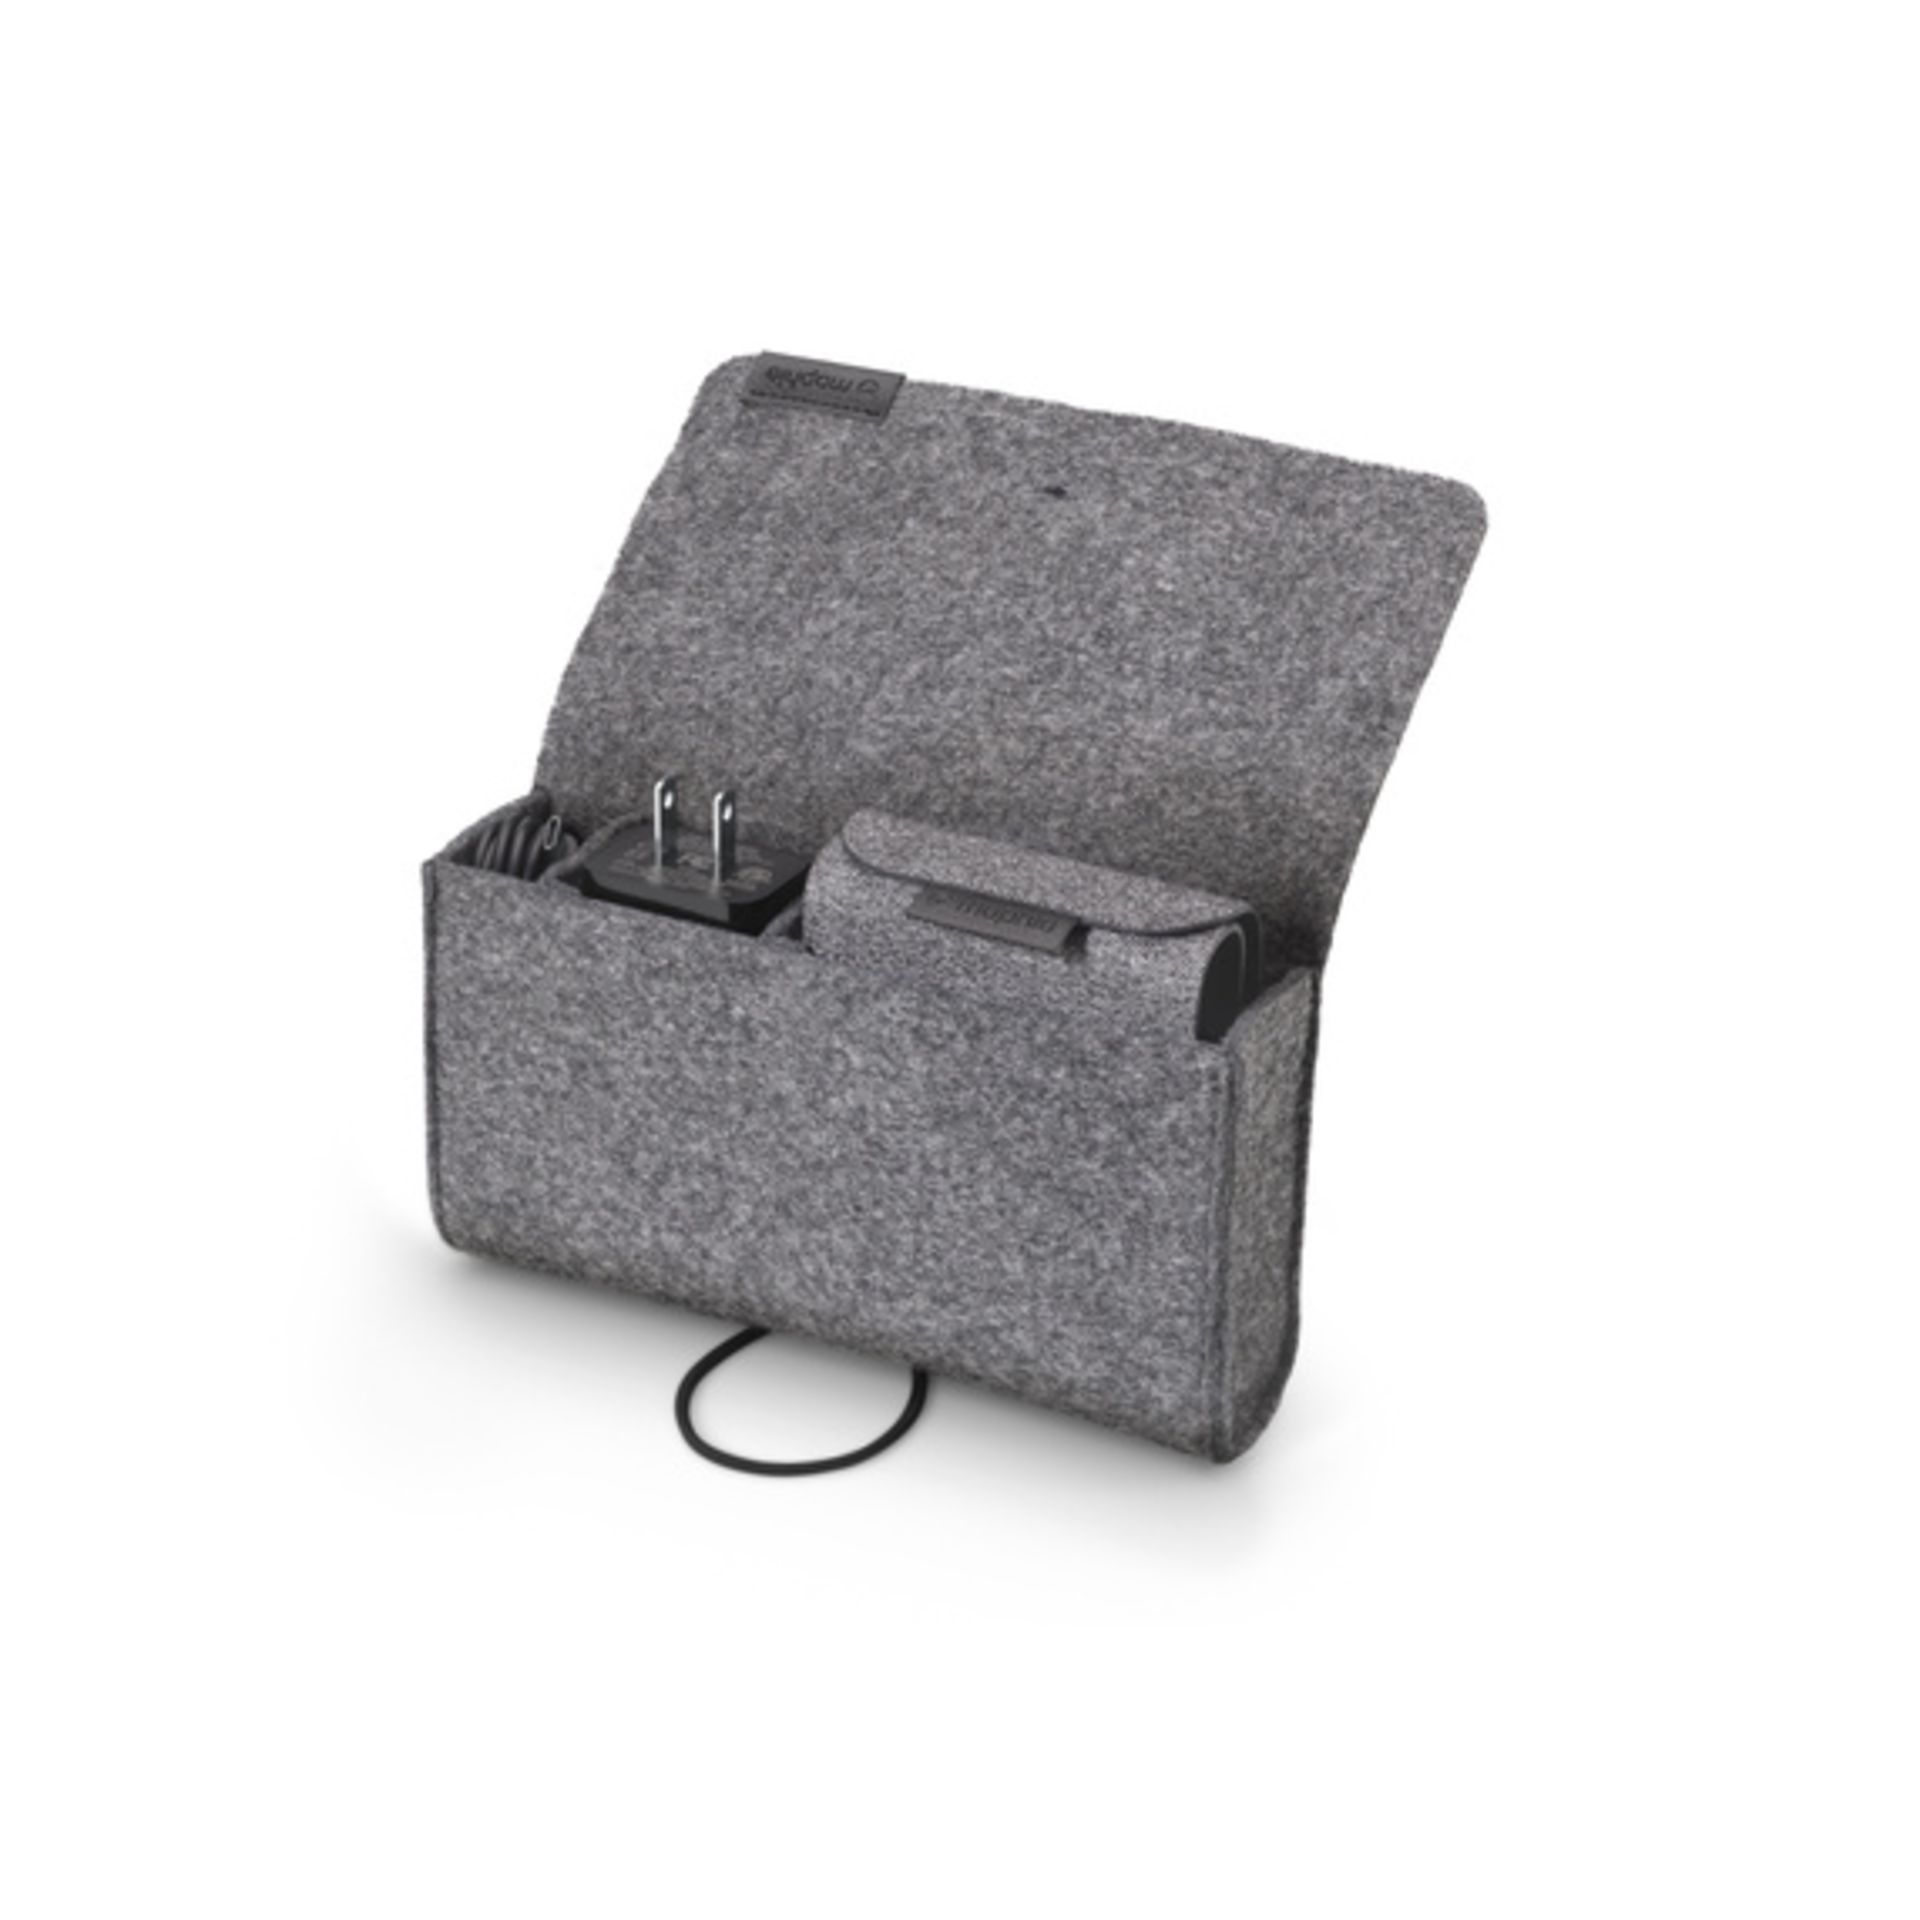 شارژر ۳ در یک مافی  داخل کیف قابل حمل همراه محصول